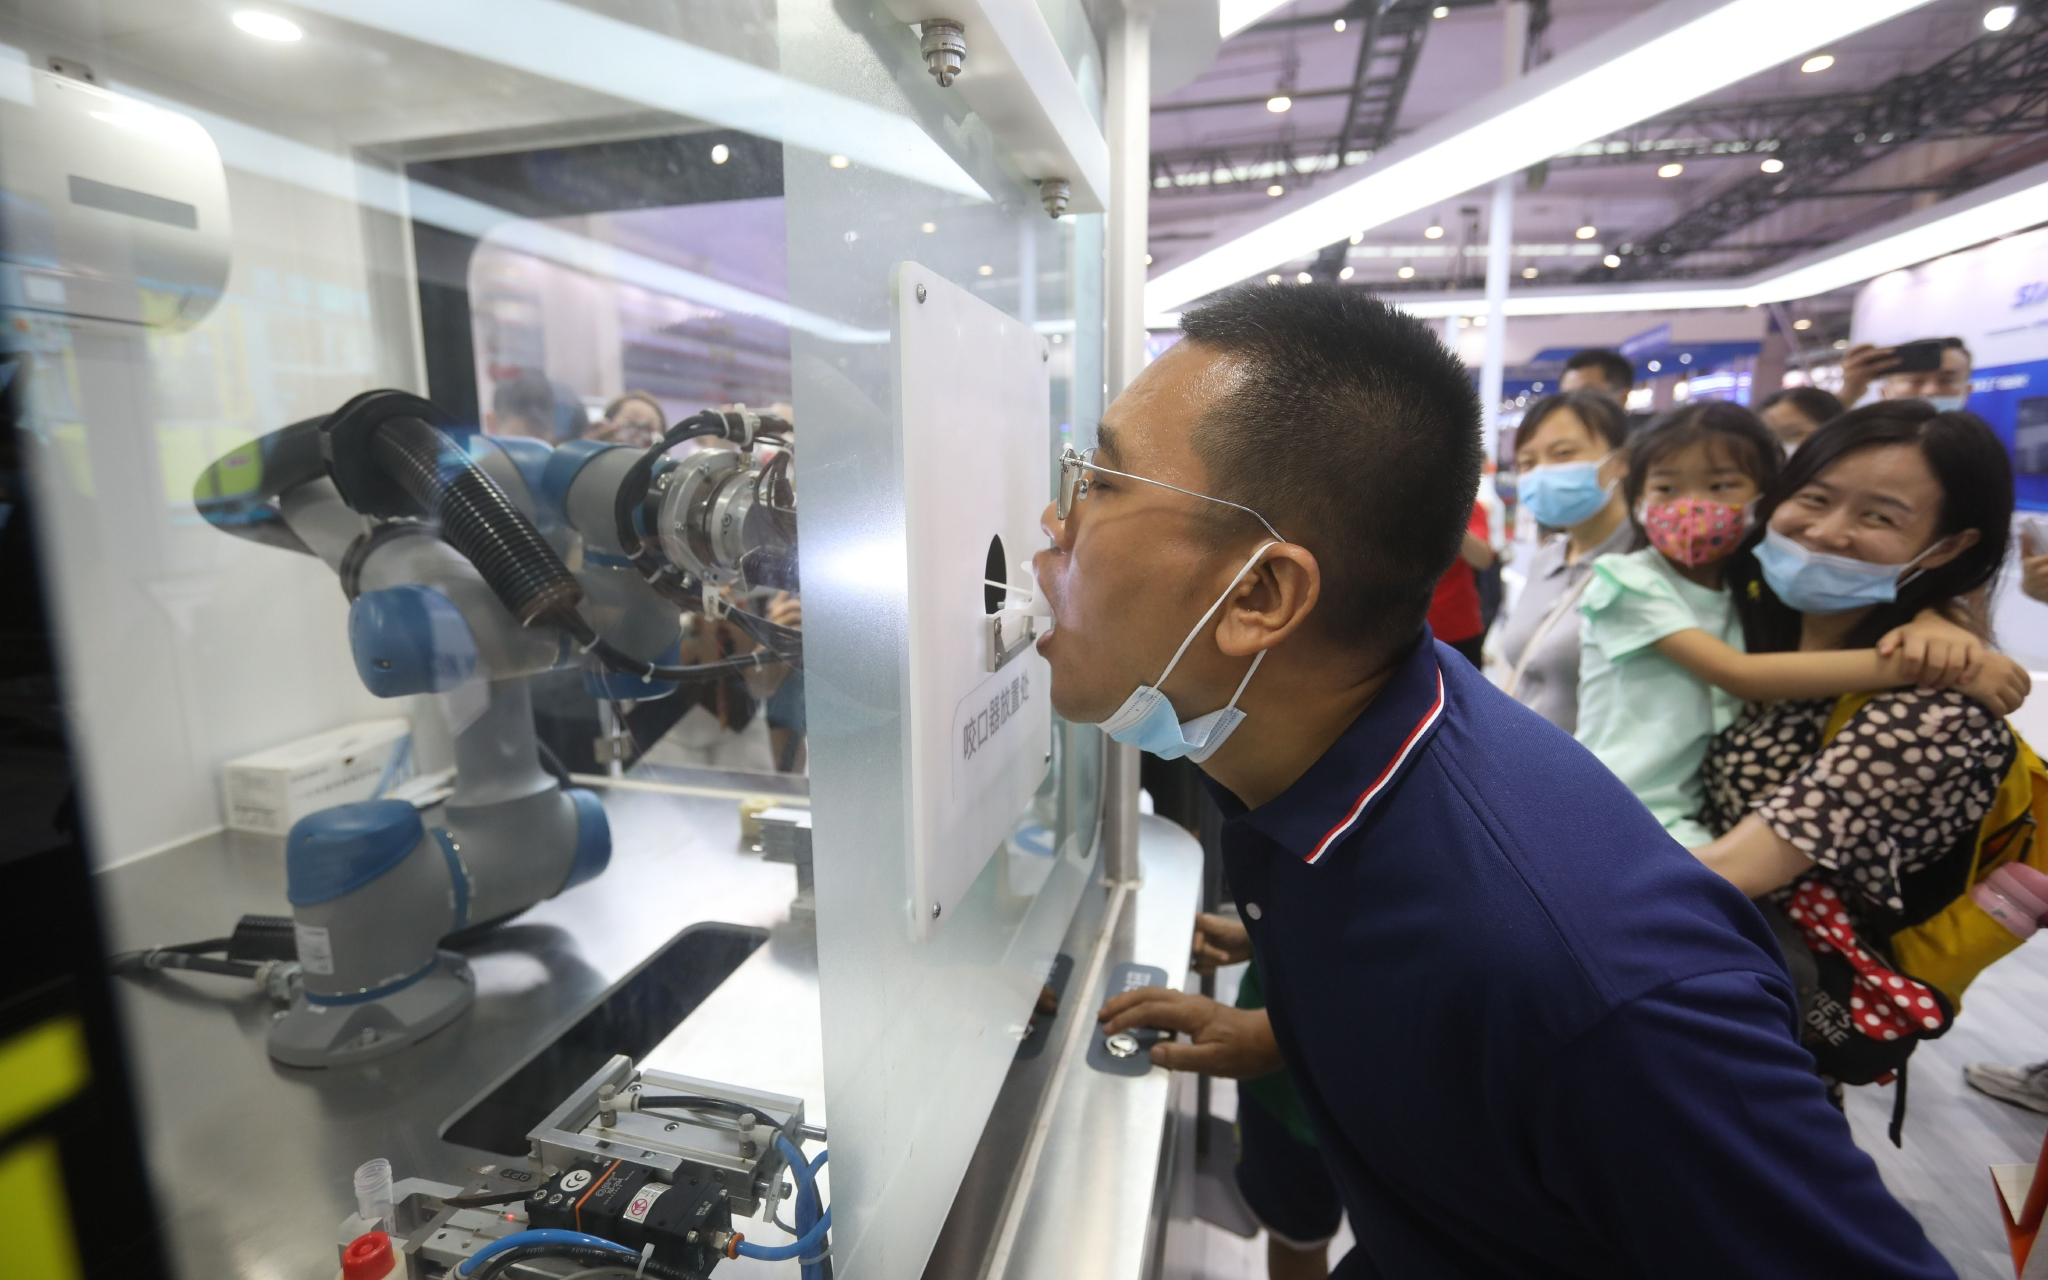 工作人员演示核酸采样机器人操作流程。  新京报记者 王嘉宁 摄